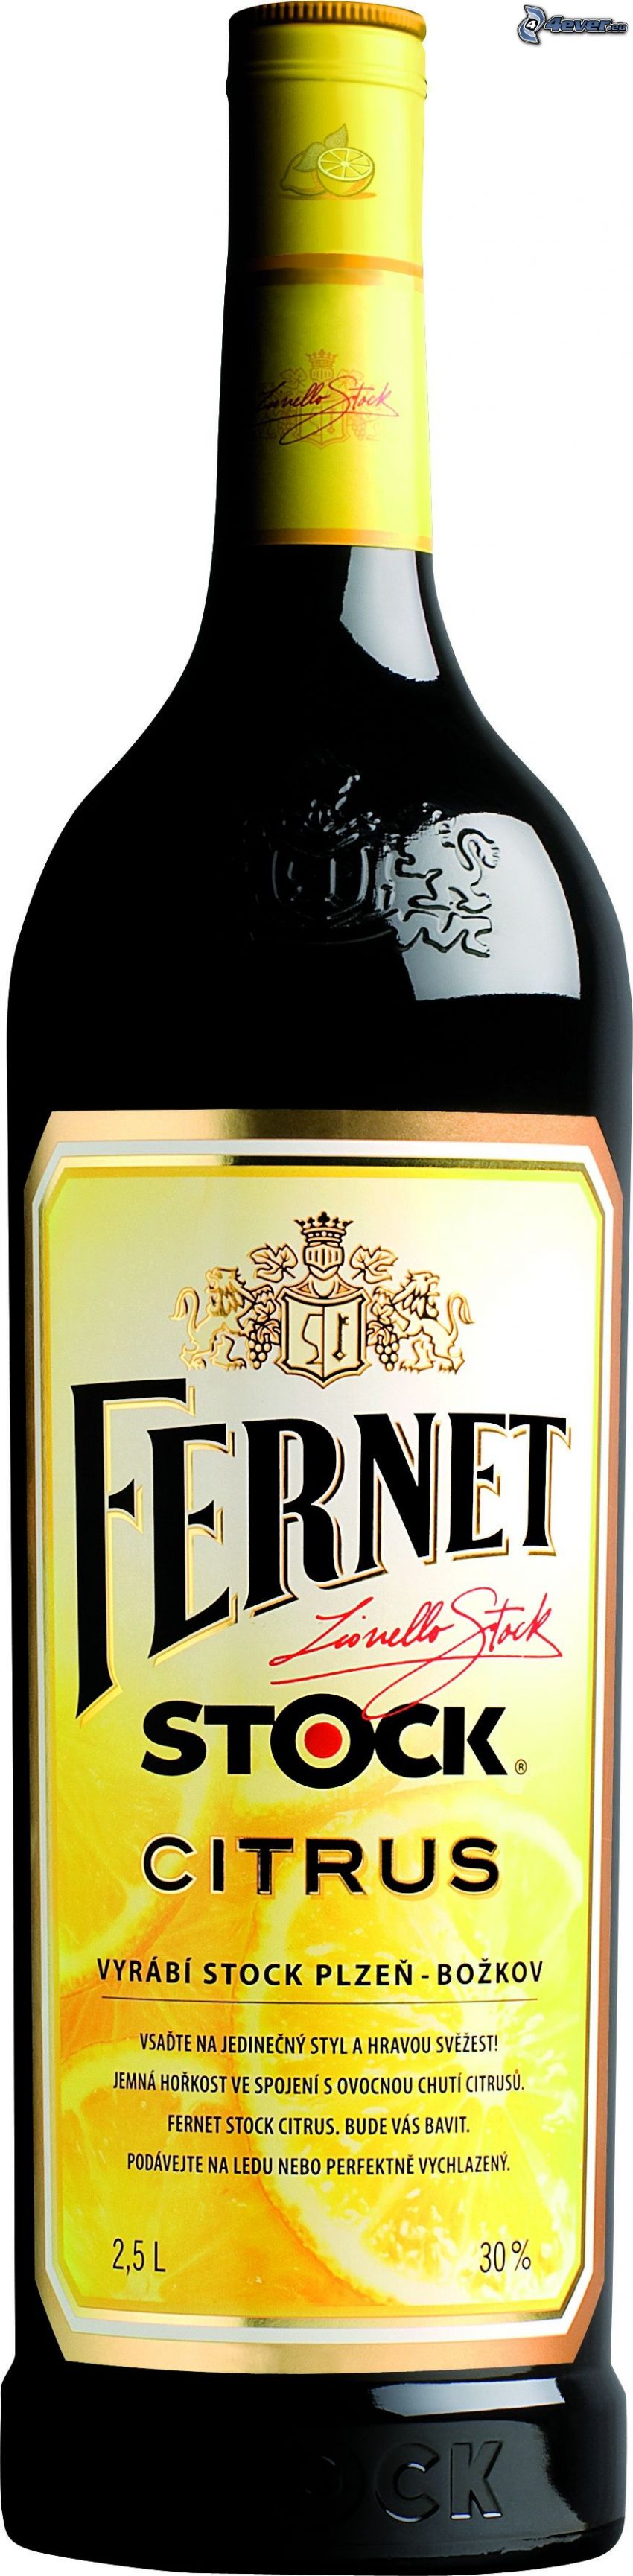 Fernet Stock Citrus, üveg, alkohol